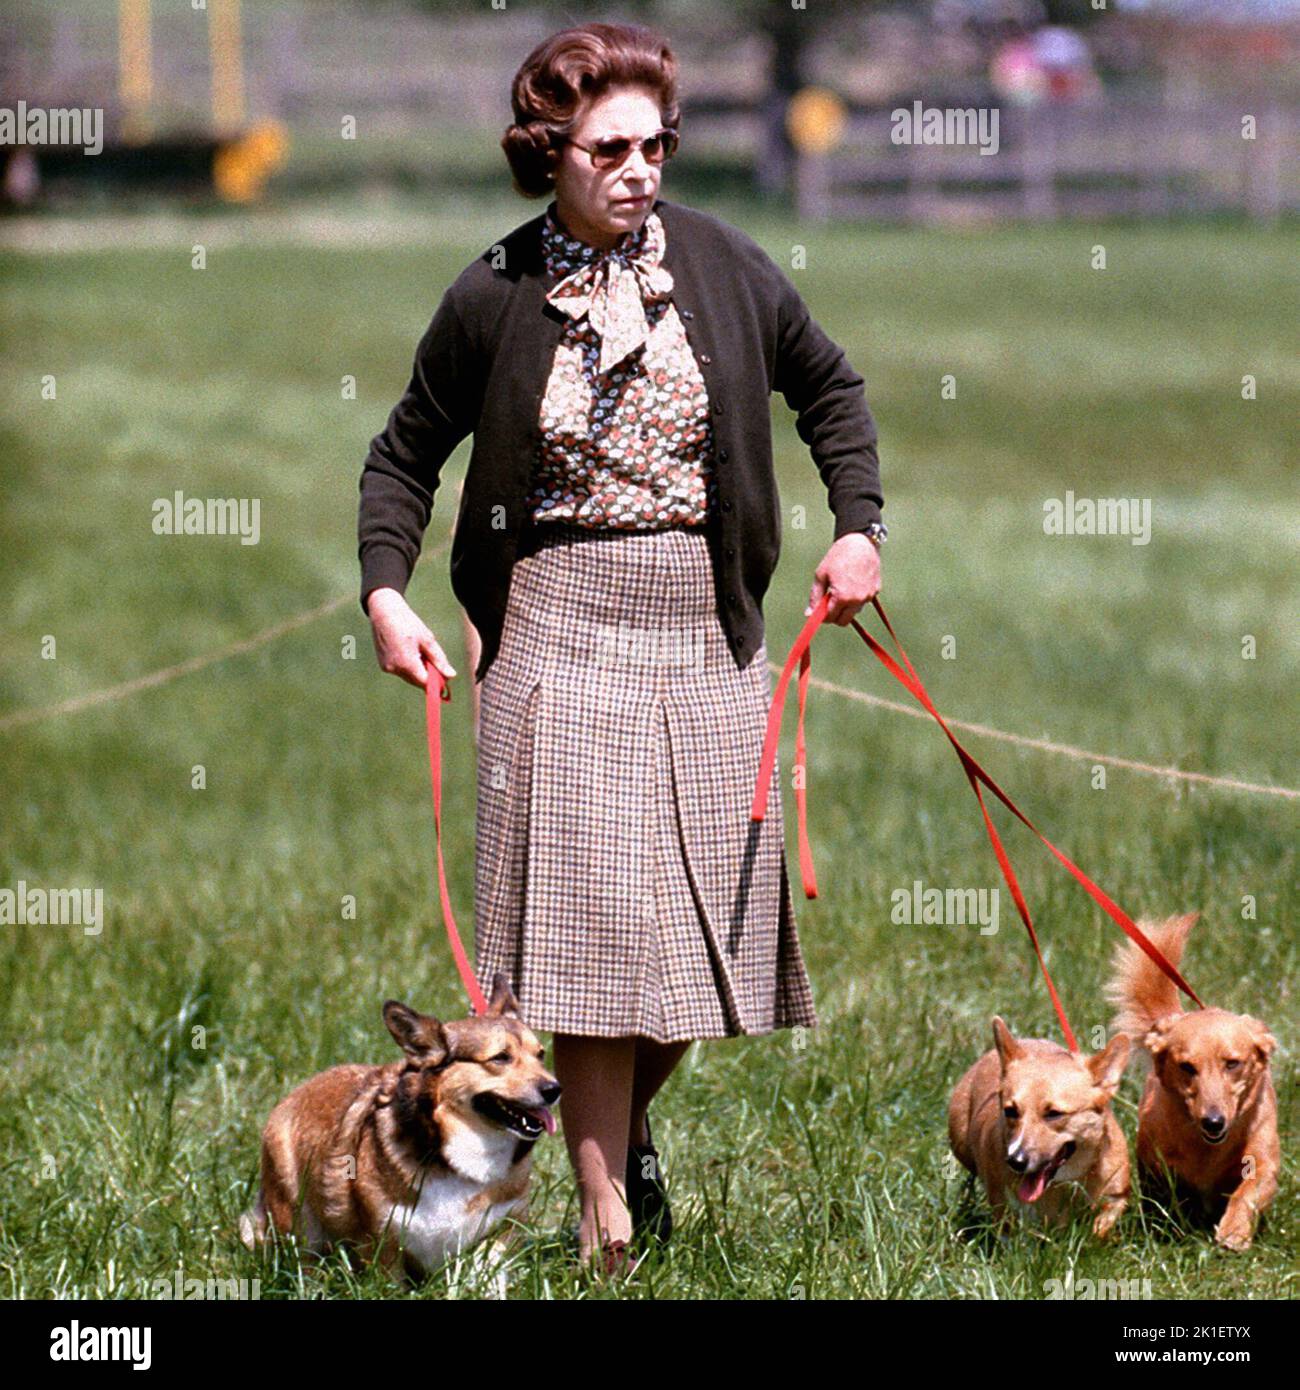 Foto del file datata 17/05/80 della Regina Elisabetta II con alcuni dei suoi corgis che camminano nel corso di Cross Country durante il secondo giorno delle prove a cavallo di Windsor. Data di emissione: Domenica 18 settembre 2022.. Il credito fotografico dovrebbe essere: PA Wire Foto Stock